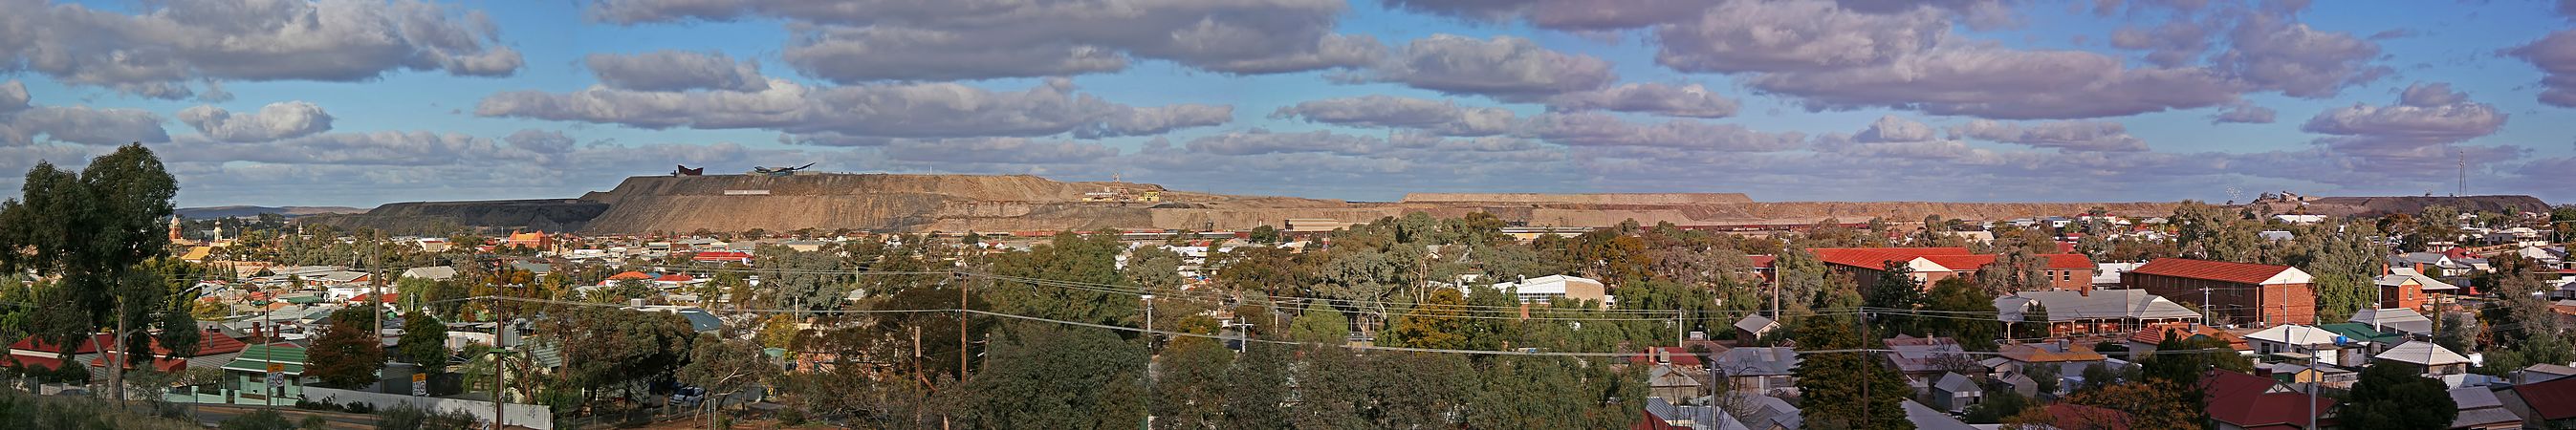 Broken Hill, by John O'Neill